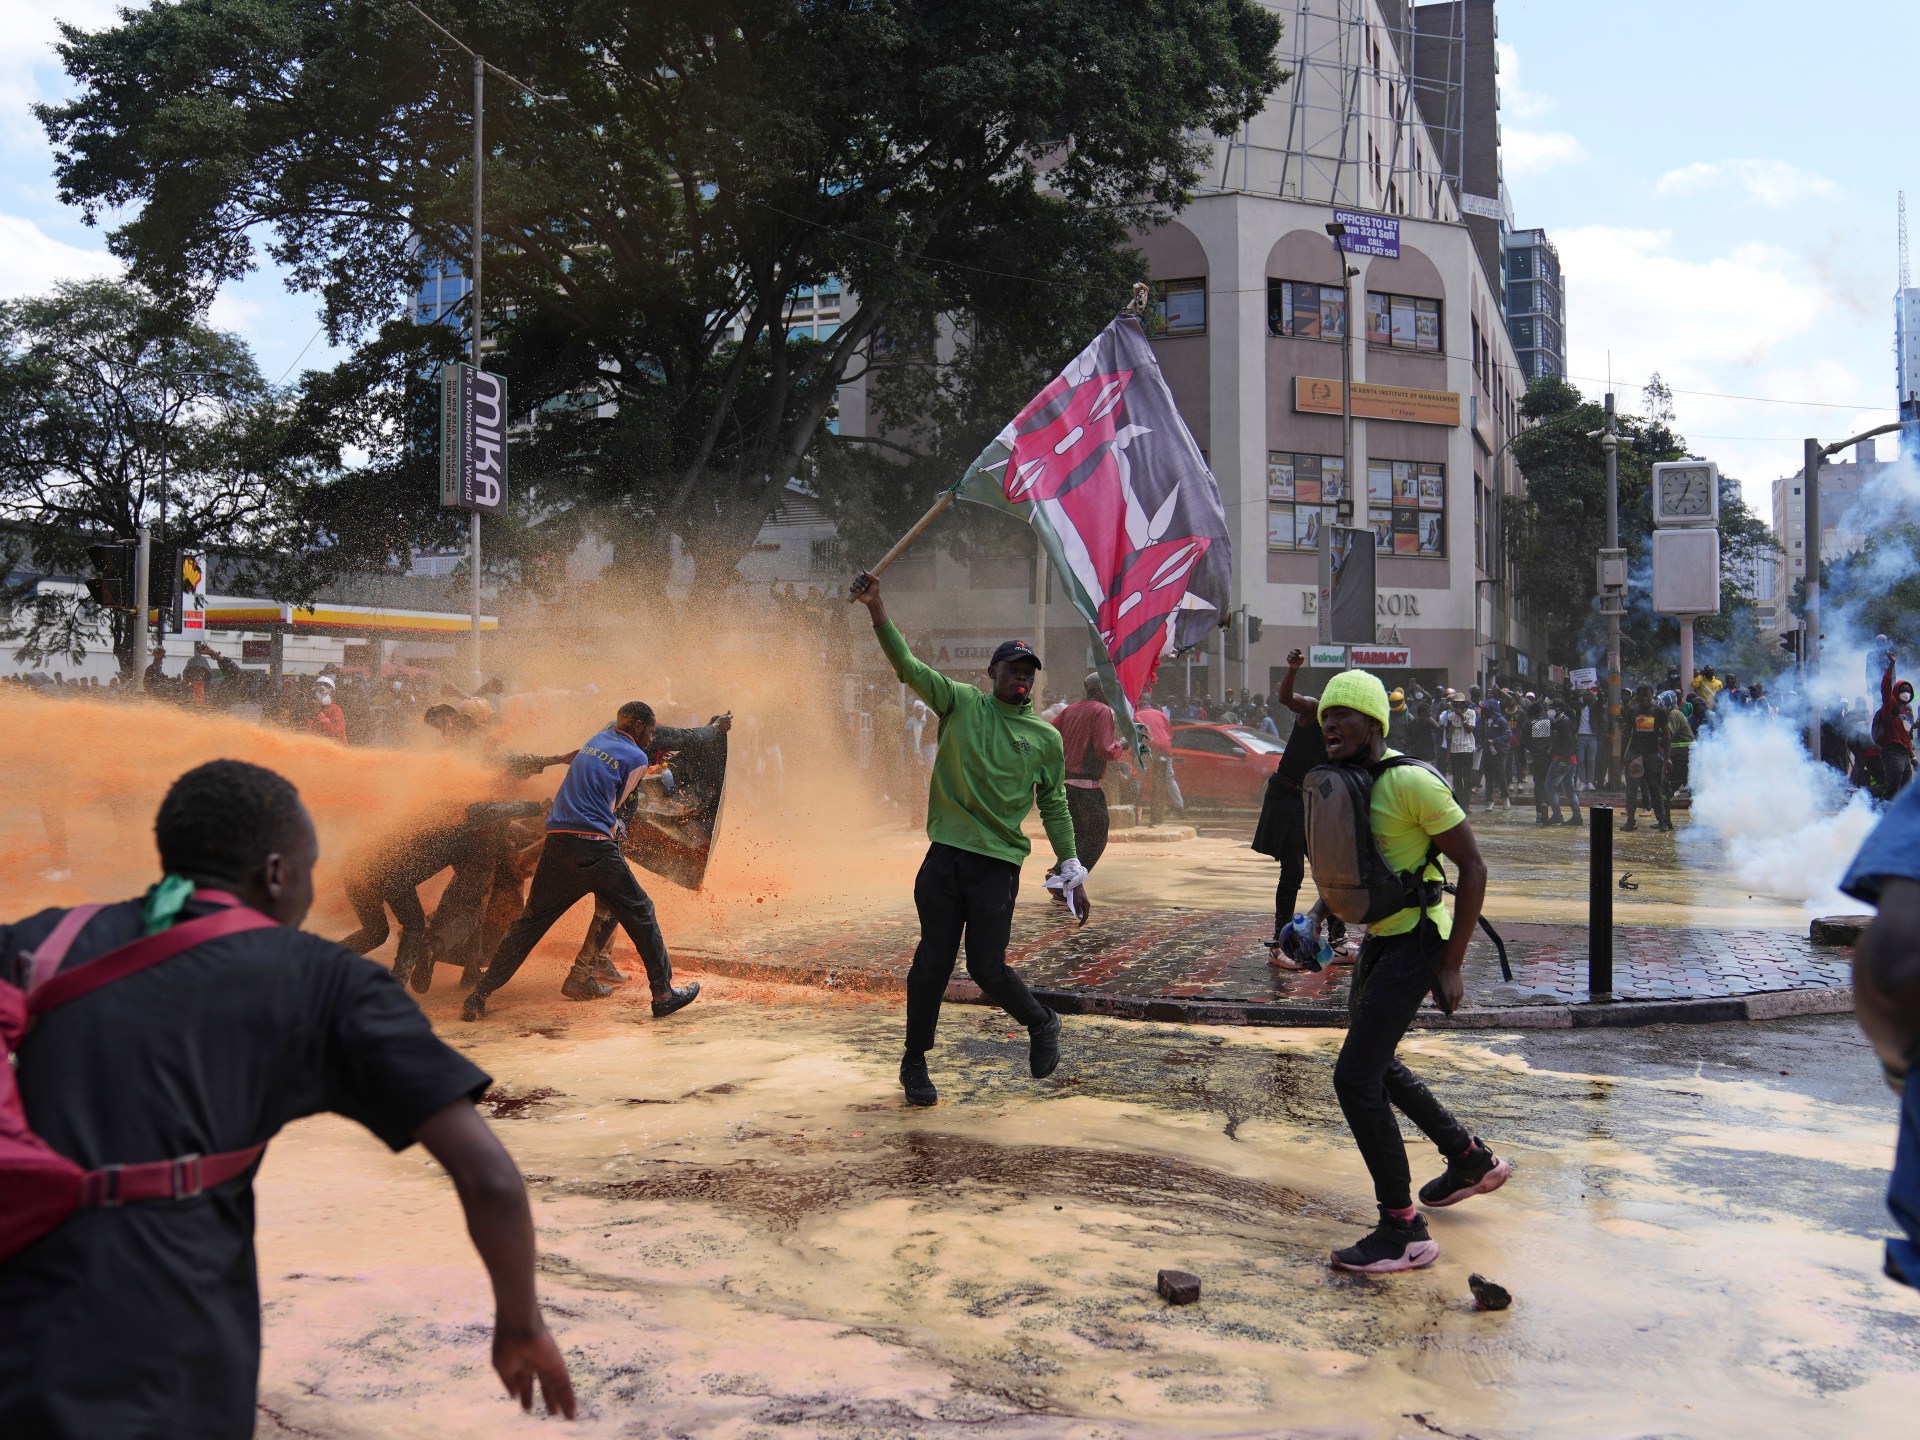 "لسنا خائفين من الموت": الاحتجاجات الضريبية في كينيا تلهم المطالبة بالتغيير على نطاق أوسع |  الاحتجاجات